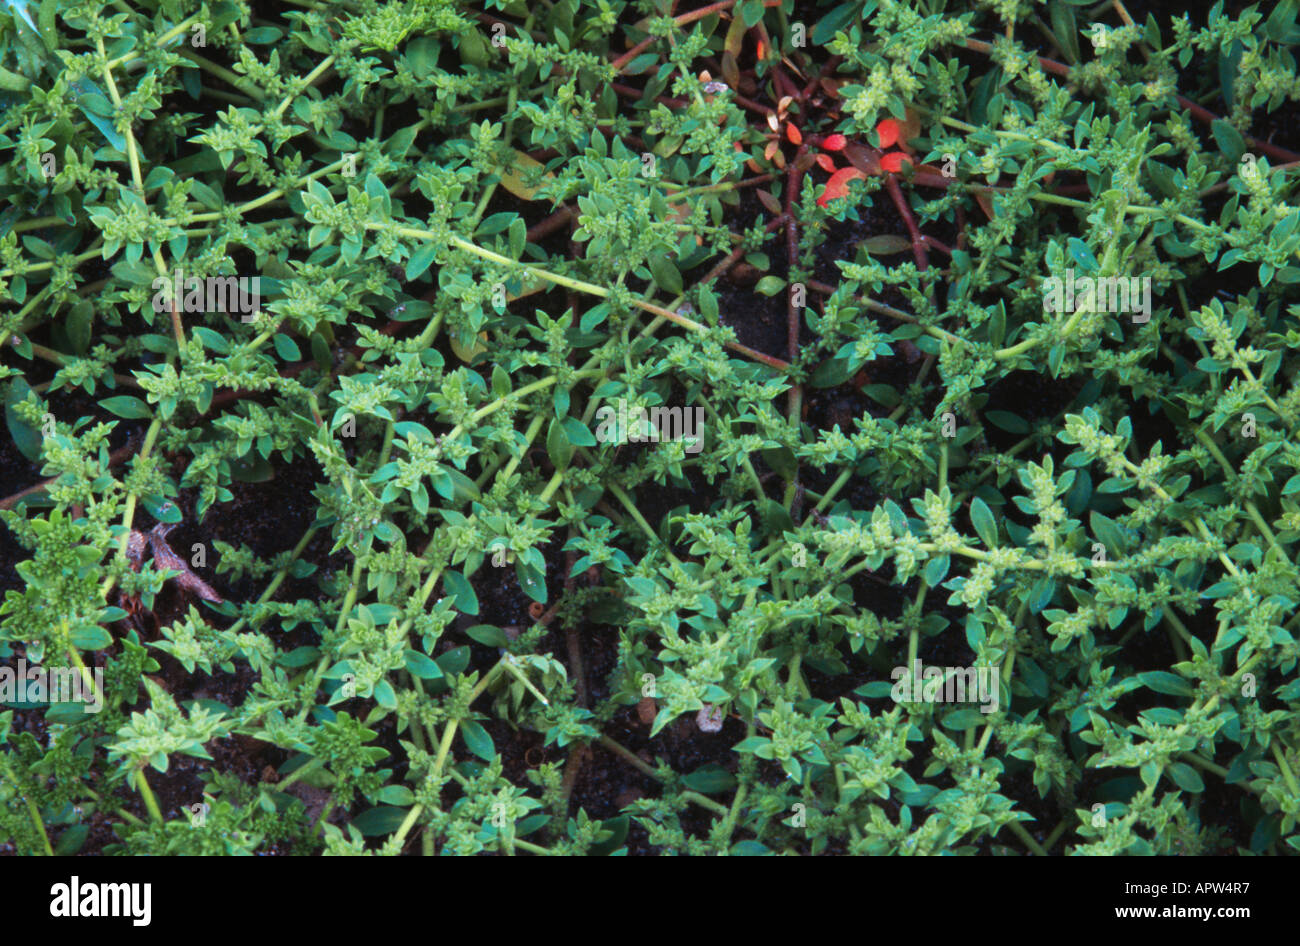 hairy rupturewort (Herniaria hirsuta), blooming Stock Photo